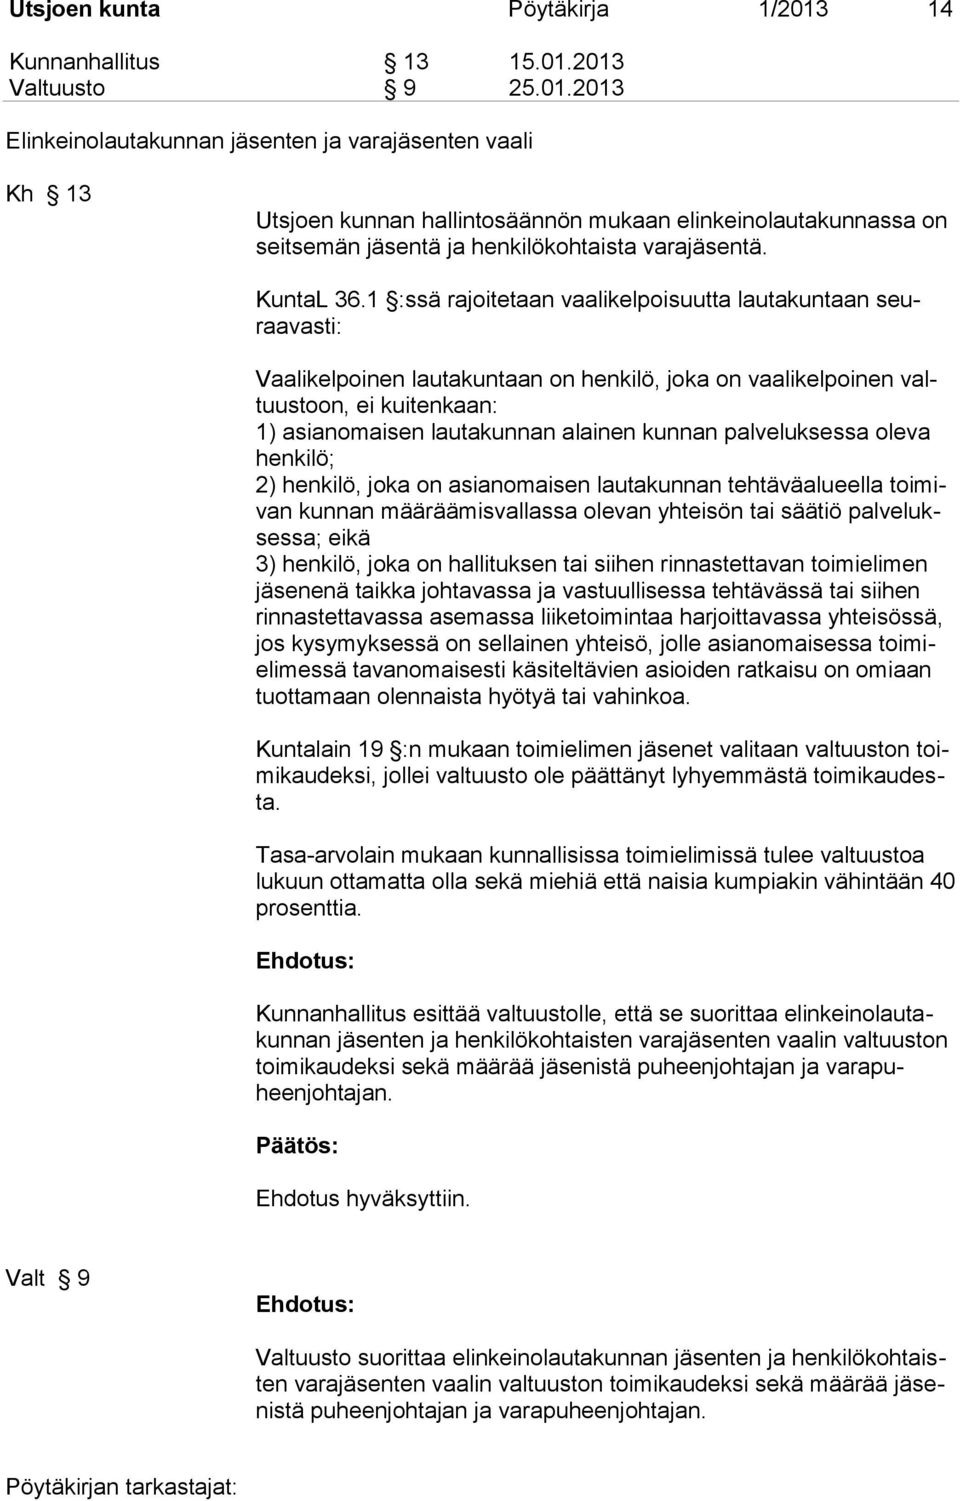 2013 Valtuusto 9 25.01.2013 Elinkeinolautakunnan jäsenten ja varajäsenten vaali Kh 13 Utsjoen kunnan hallintosäännön mukaan elinkeinolautakunnassa on seitsemän jäsentä ja henkilökohtaista varajäsentä.